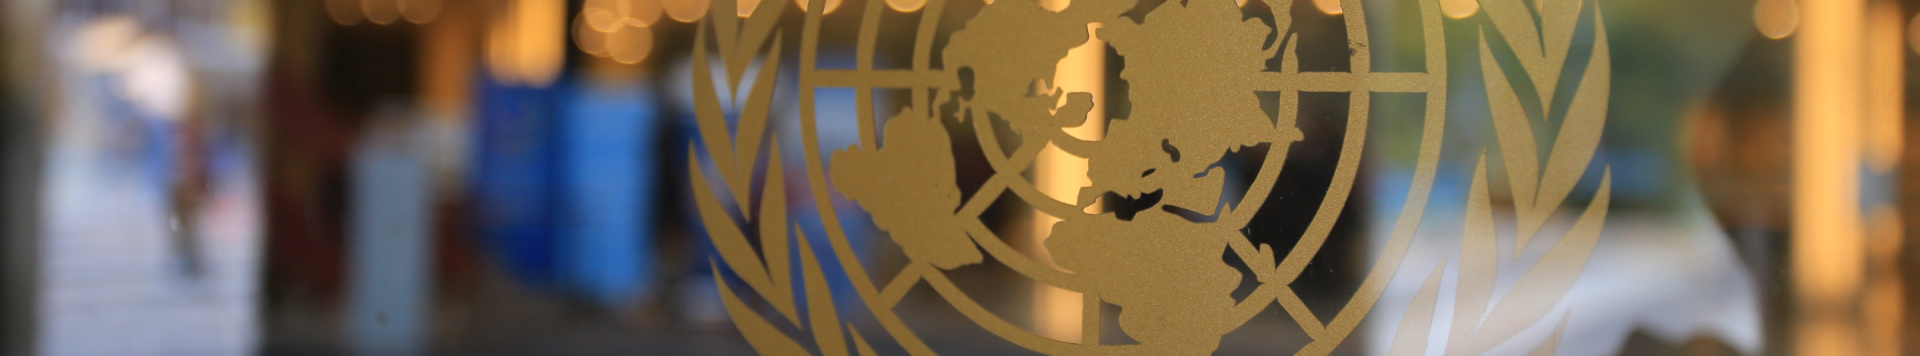 Close-up of a UN logo on a glass door